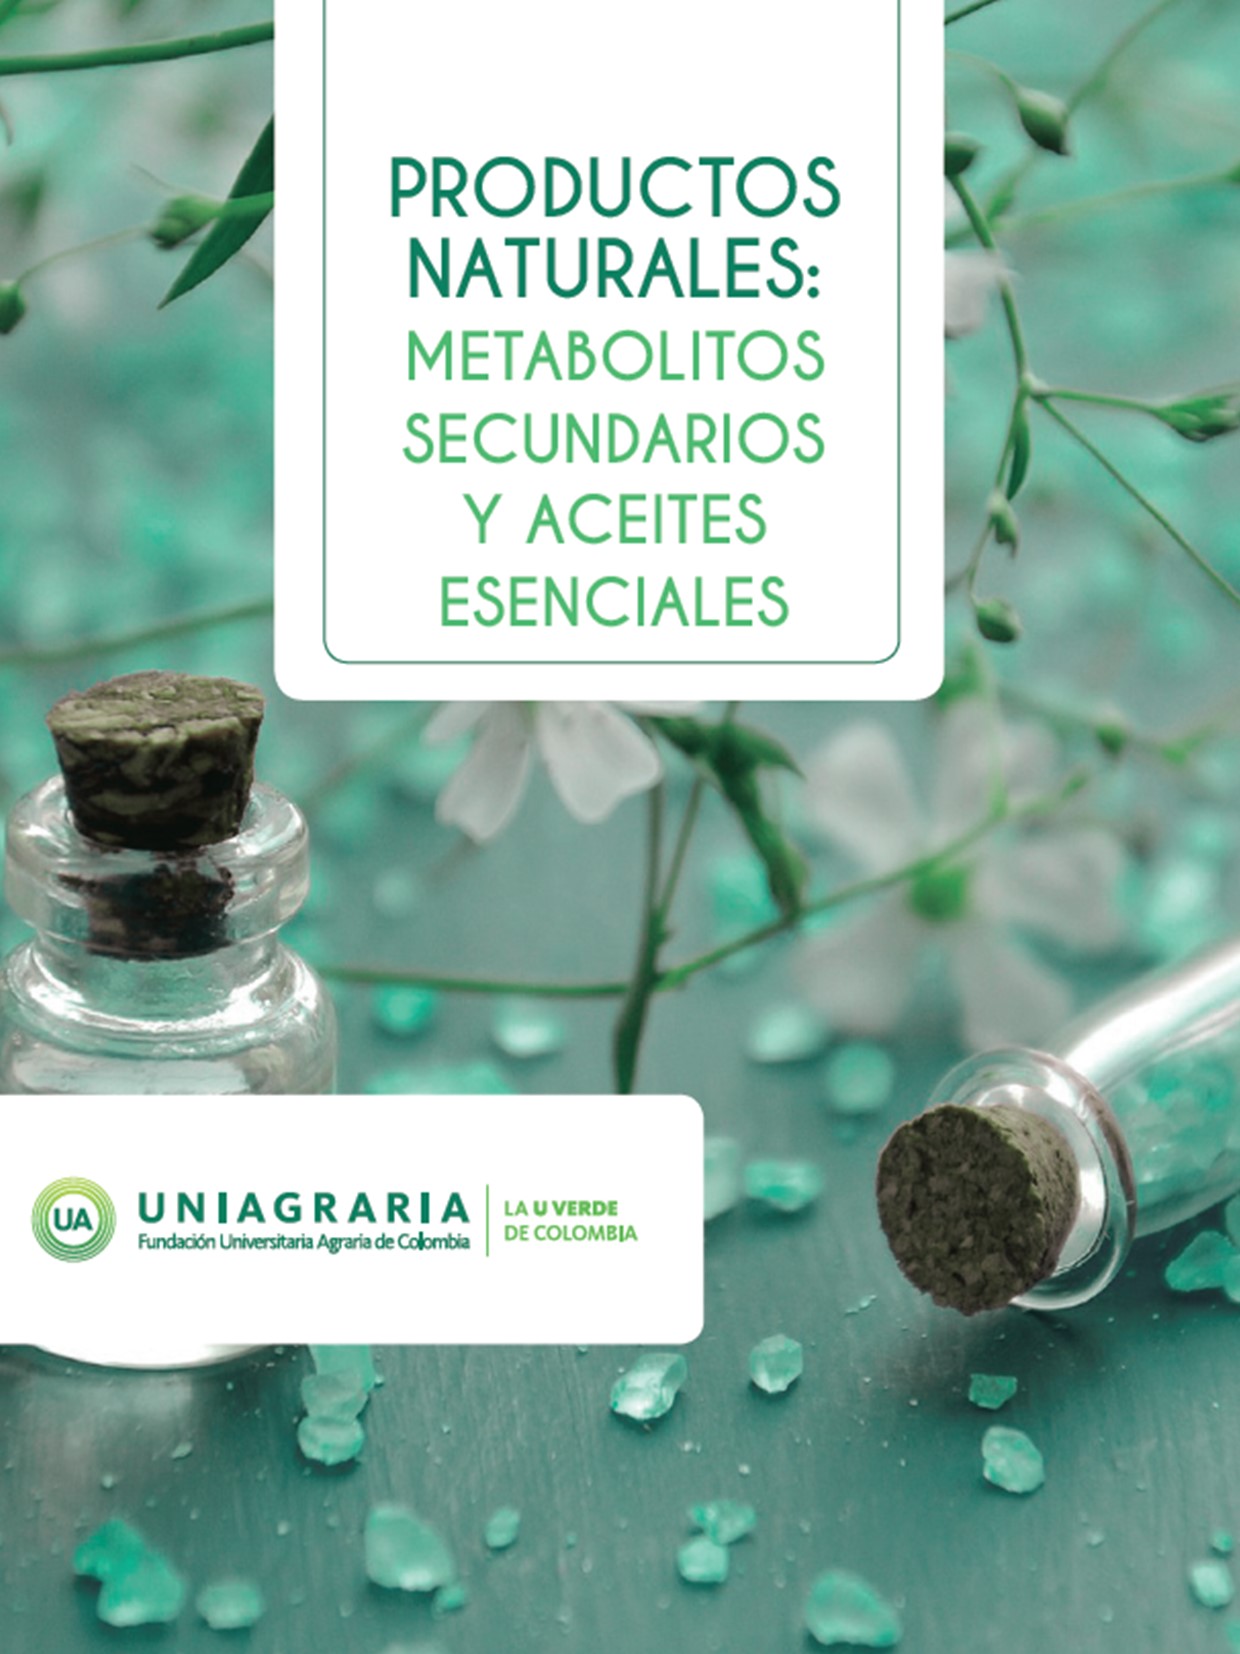 PRODUCTOS NATURALES: METABOLITOS SECUNDARIOS Y ACEITES ESENCIALES